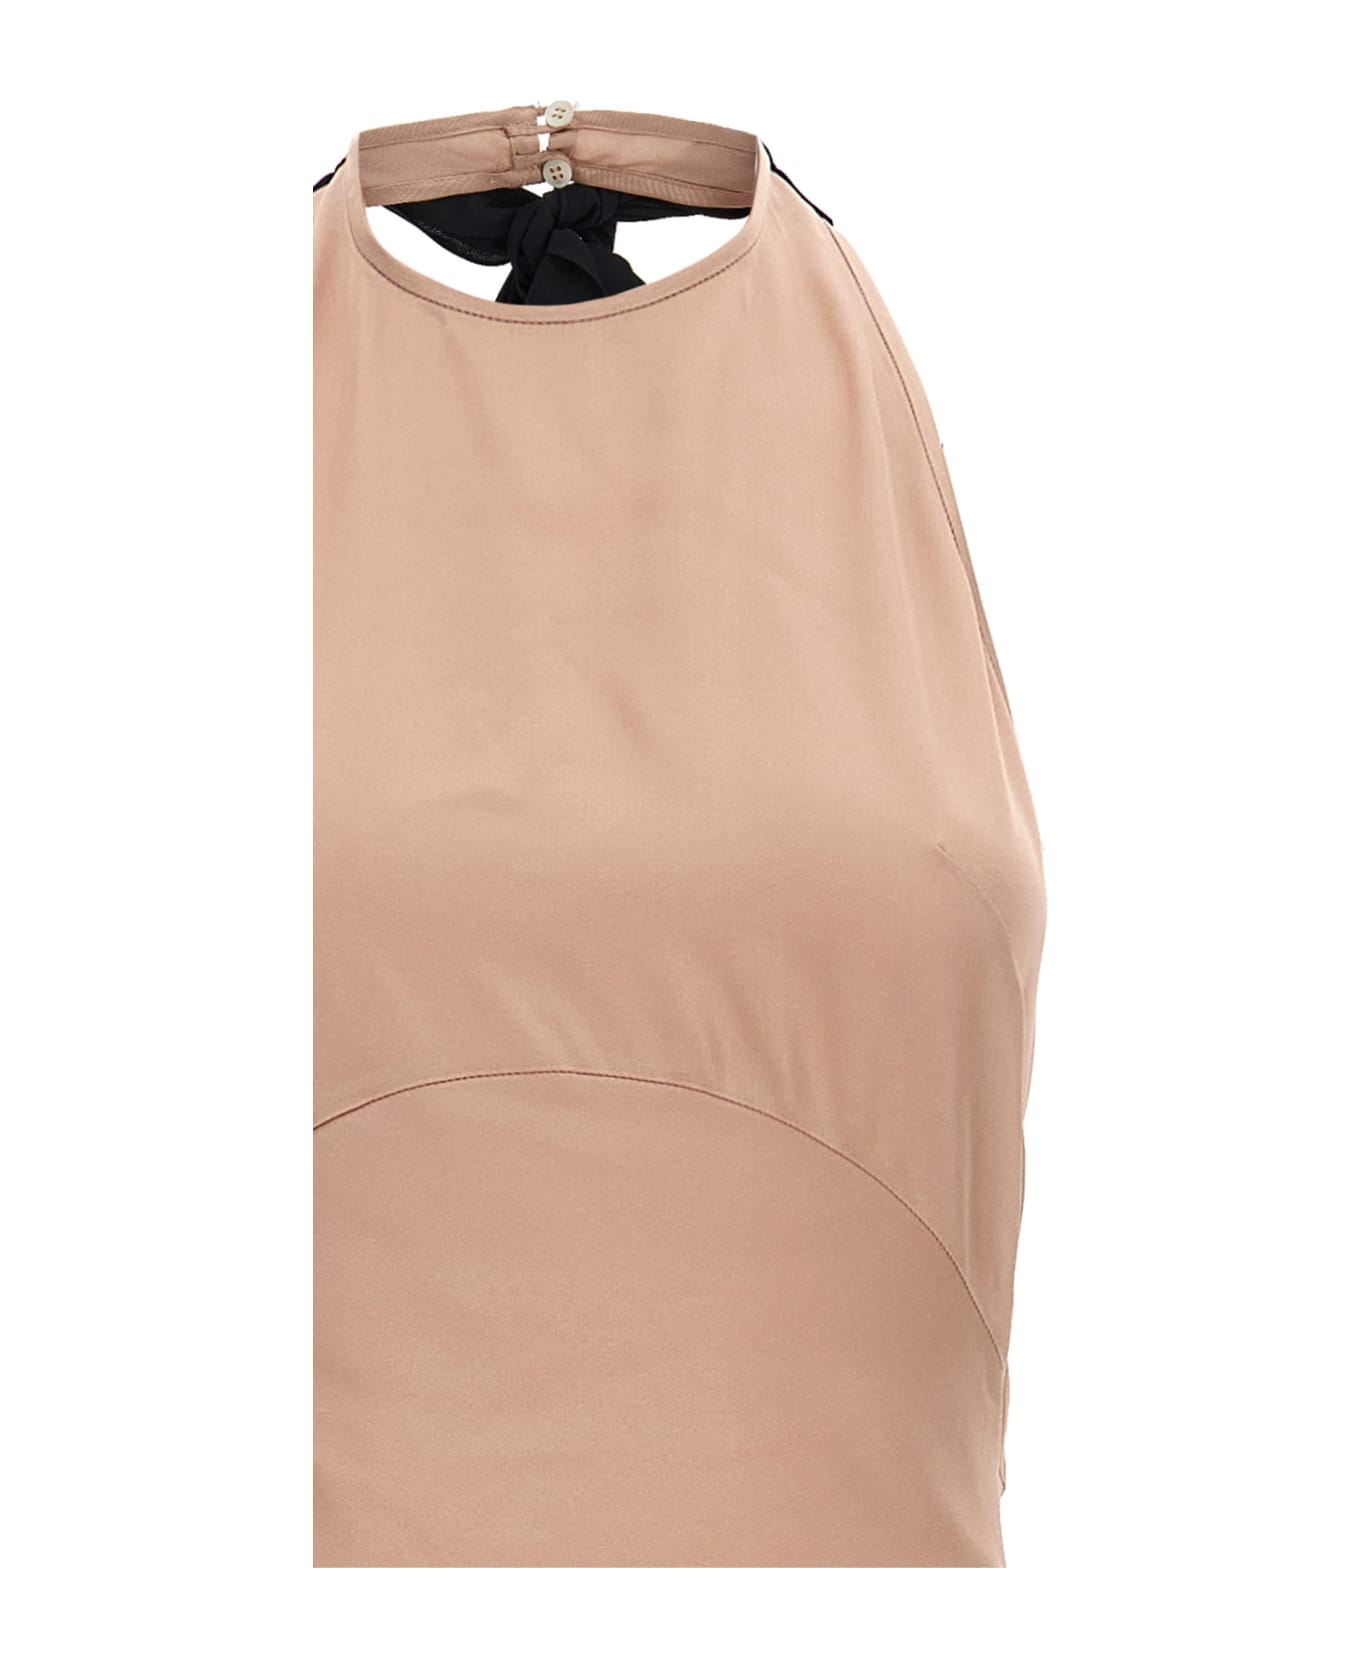 N.21 Lace Satin Long Dress - Pink